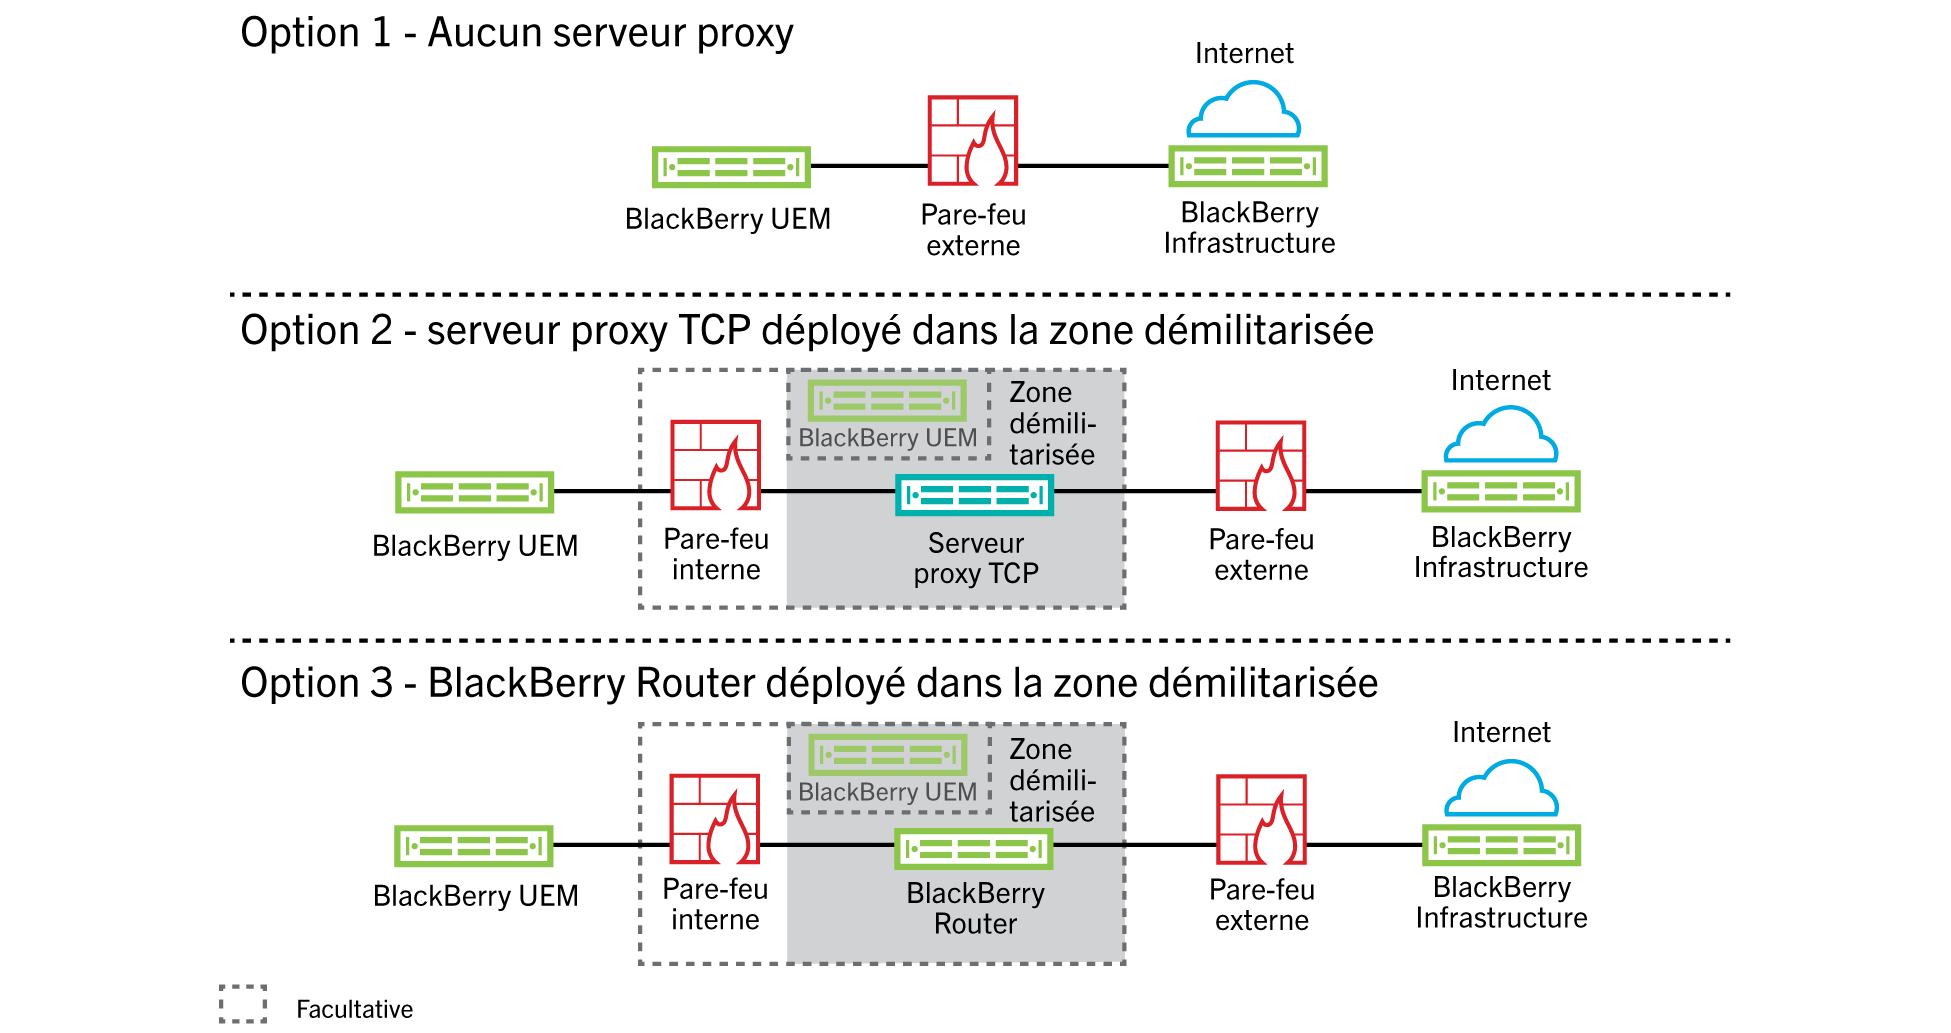 Ce schéma illustre les options de configuration de BlackBerry UEM permettant de n'utiliser aucun serveur proxy, un serveur proxy TCP déployé dans une zone démilitarisée et BlackBerry Router déployé dans une zone démilitarisée.